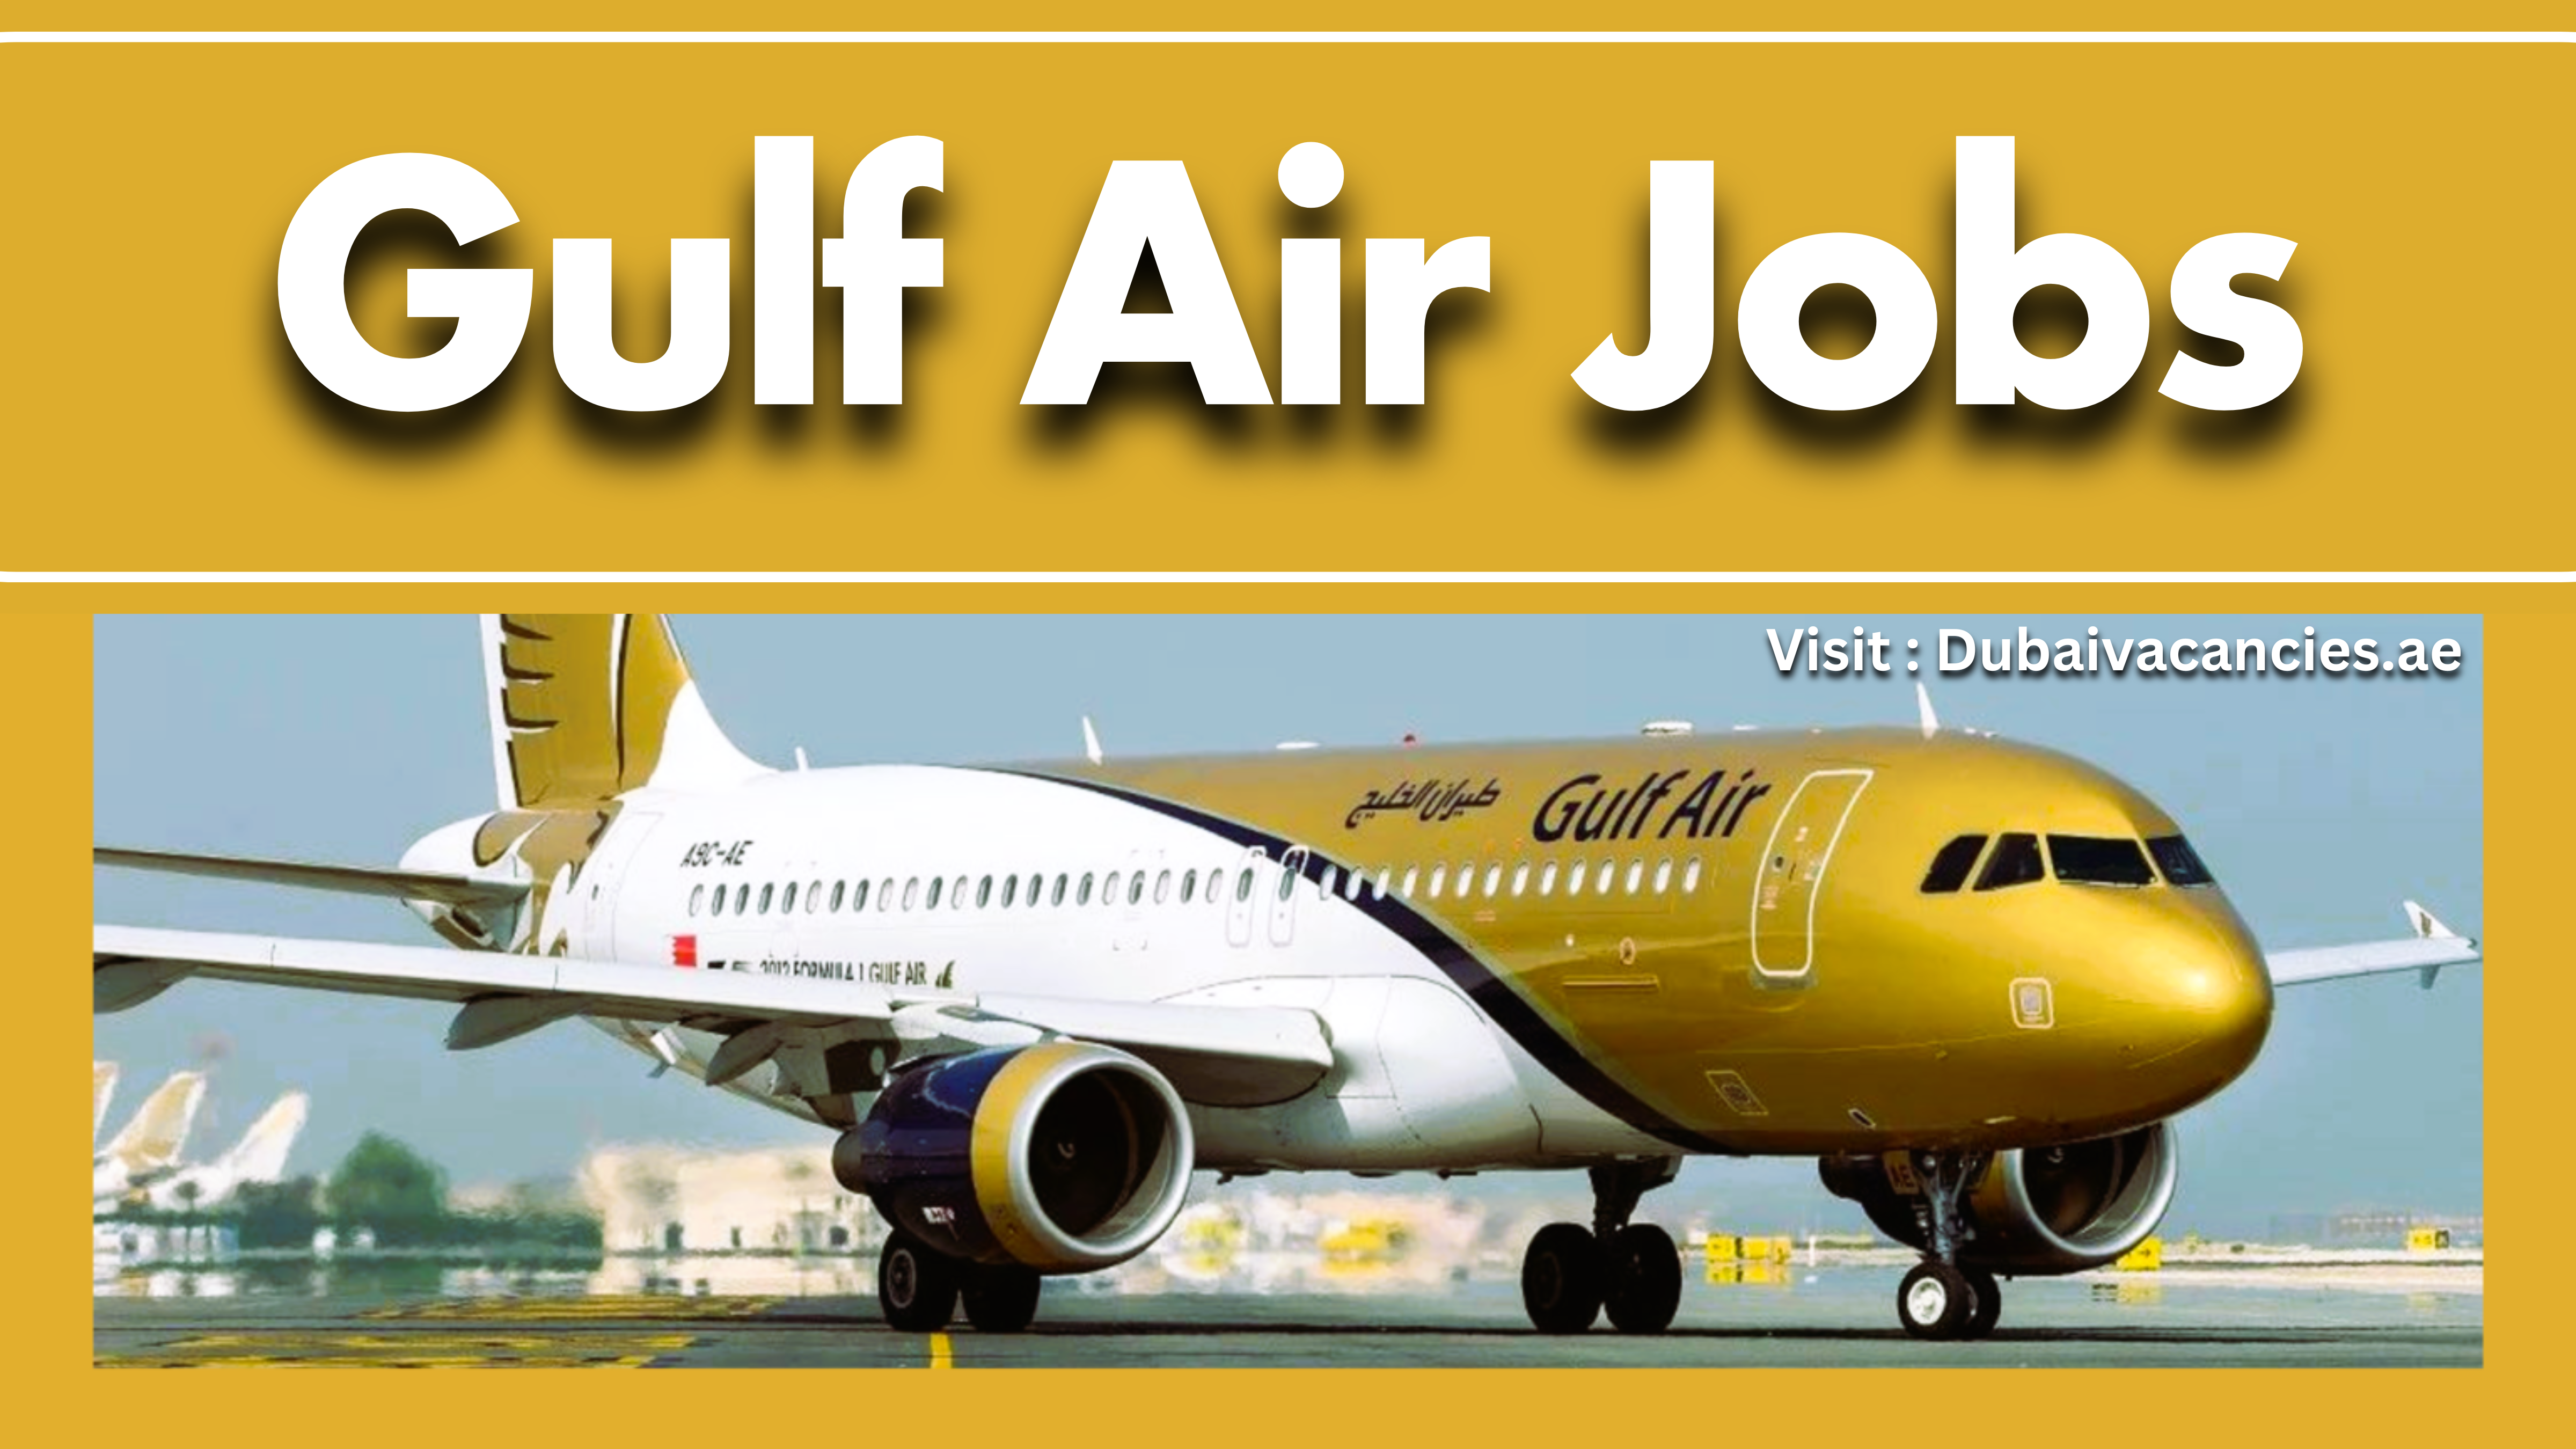 Gulf Air Jobs